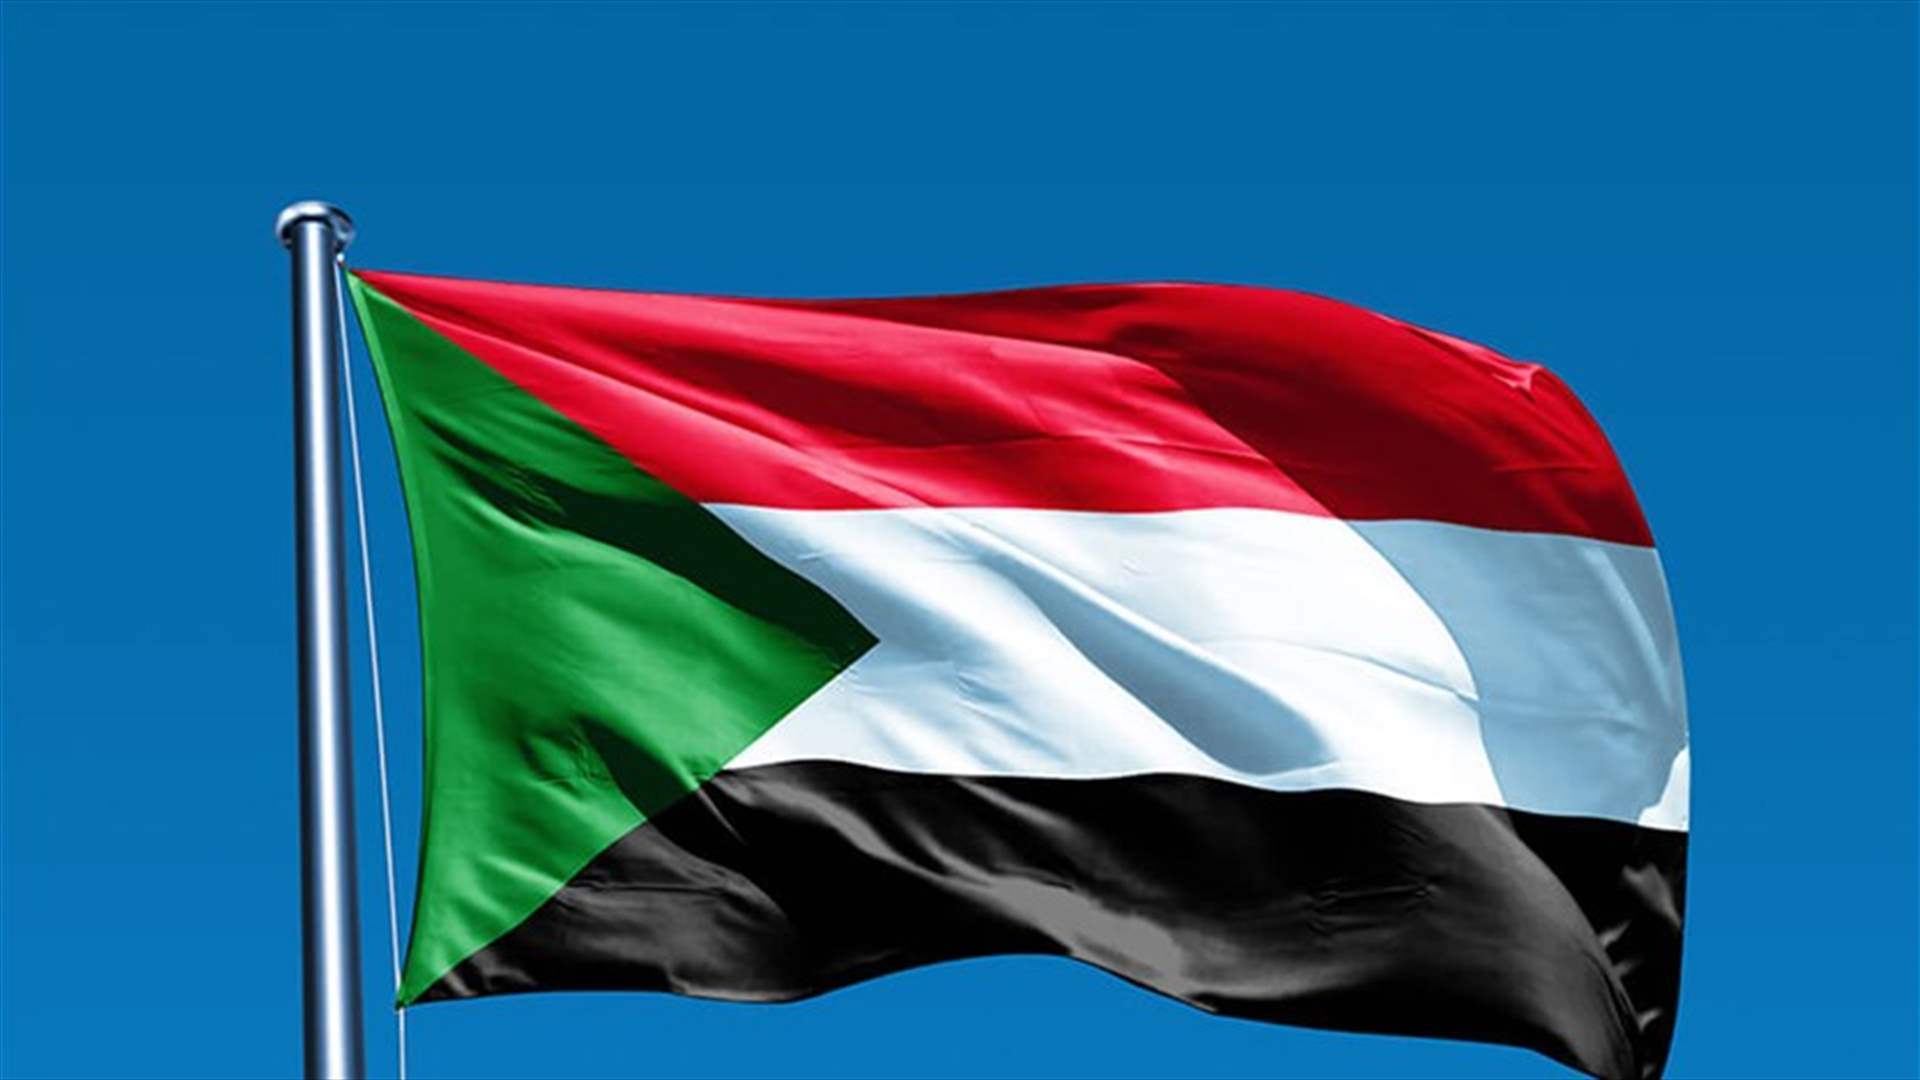 السودان يستدعي سفيره لدى كينيا احتجاجاً على زيارة دقلو لنيروبي